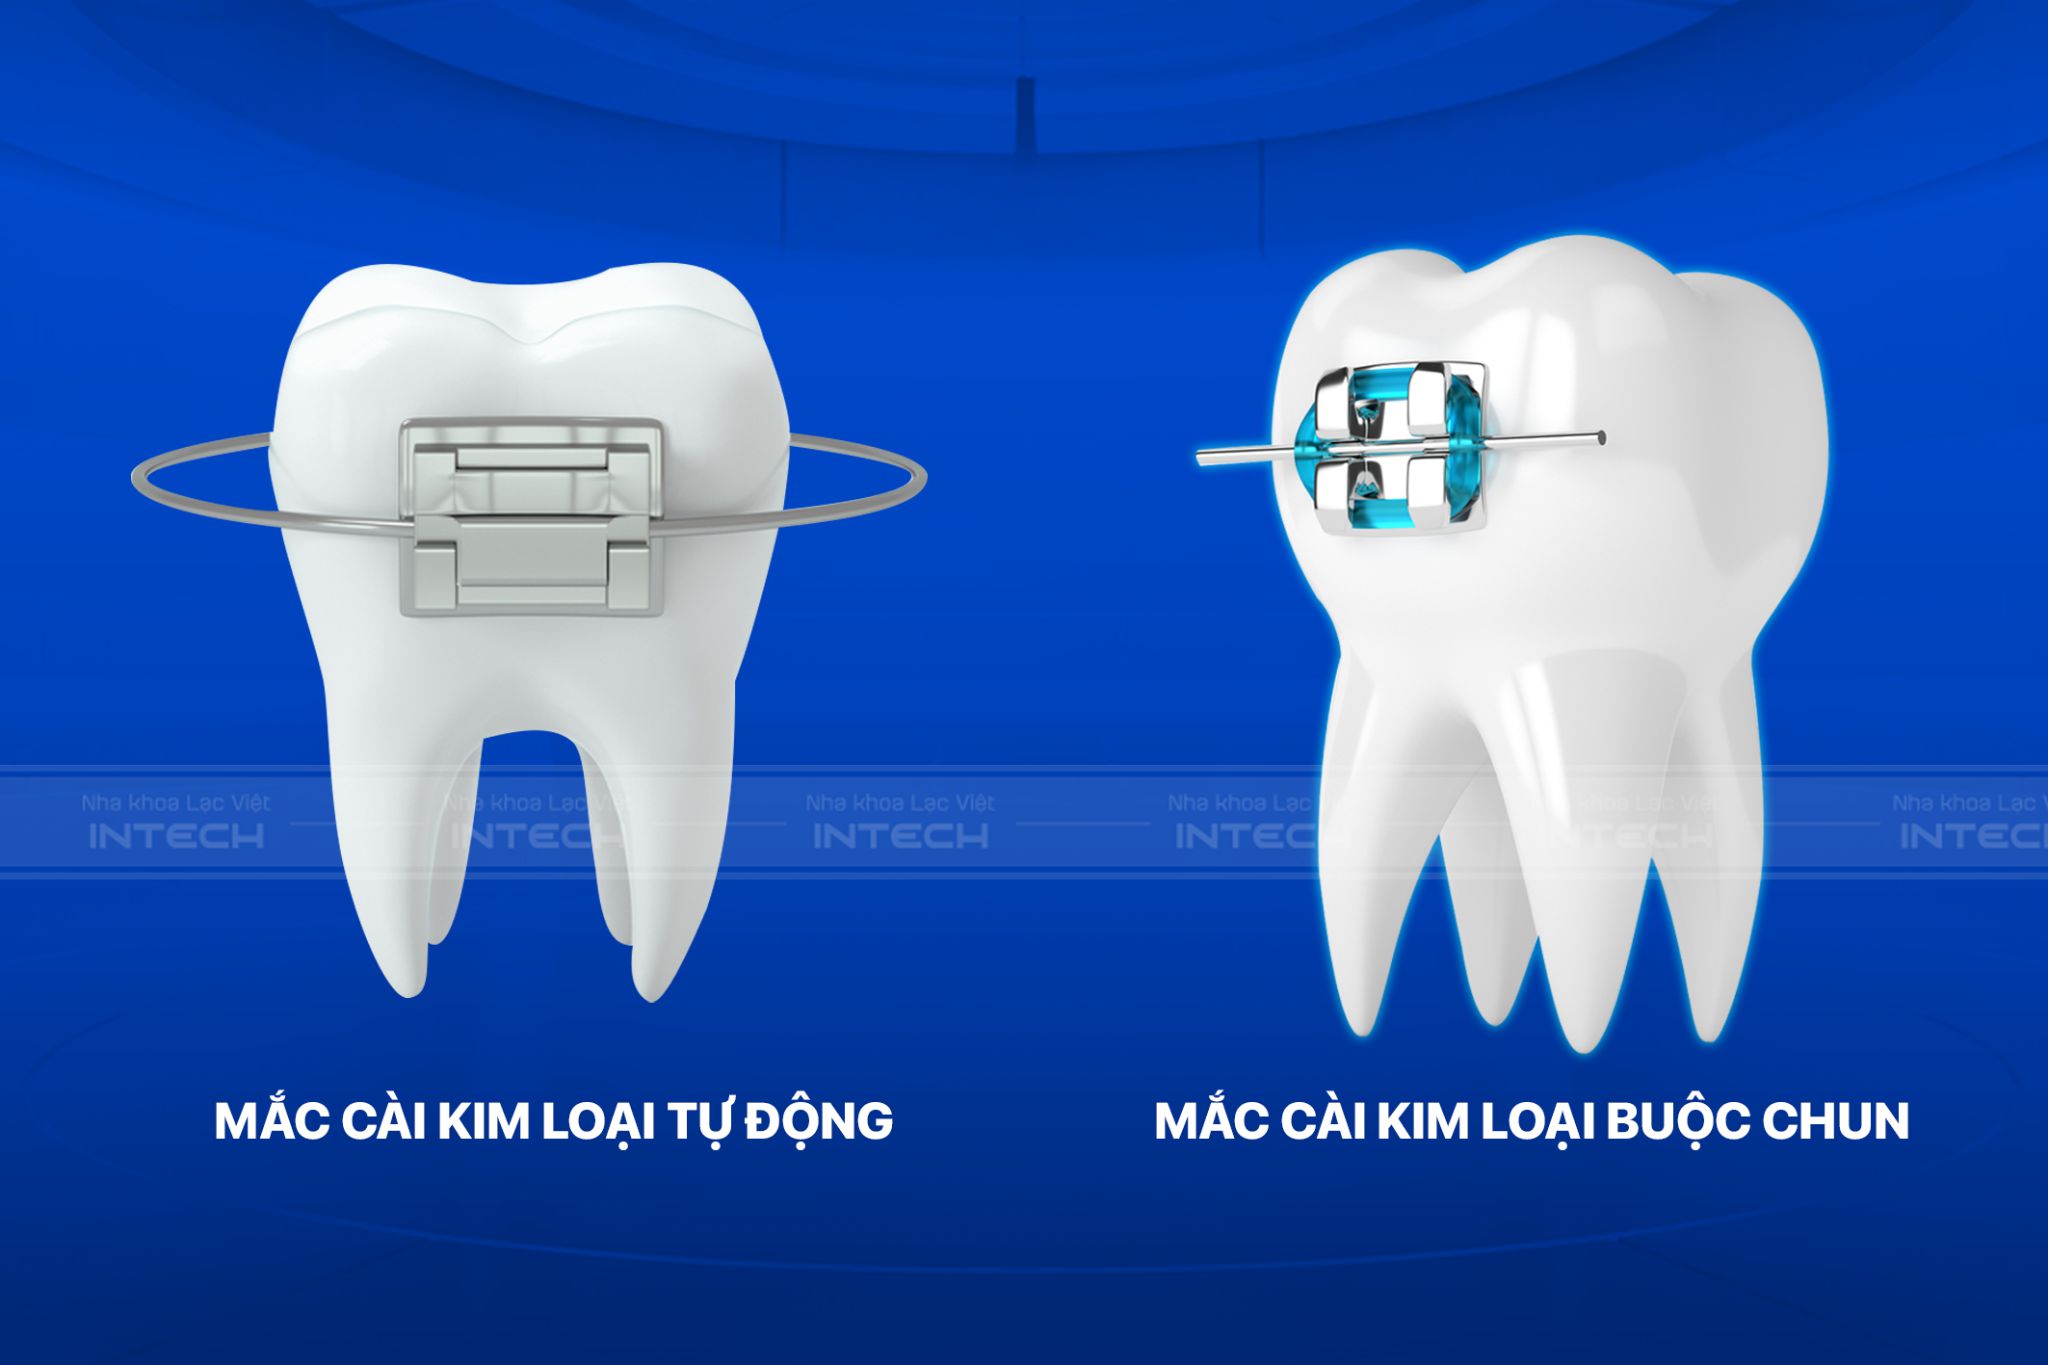 Mắc cài tự động và mắc cài buộc chun có cấu tạo và chức năng gì? giá niềng răng